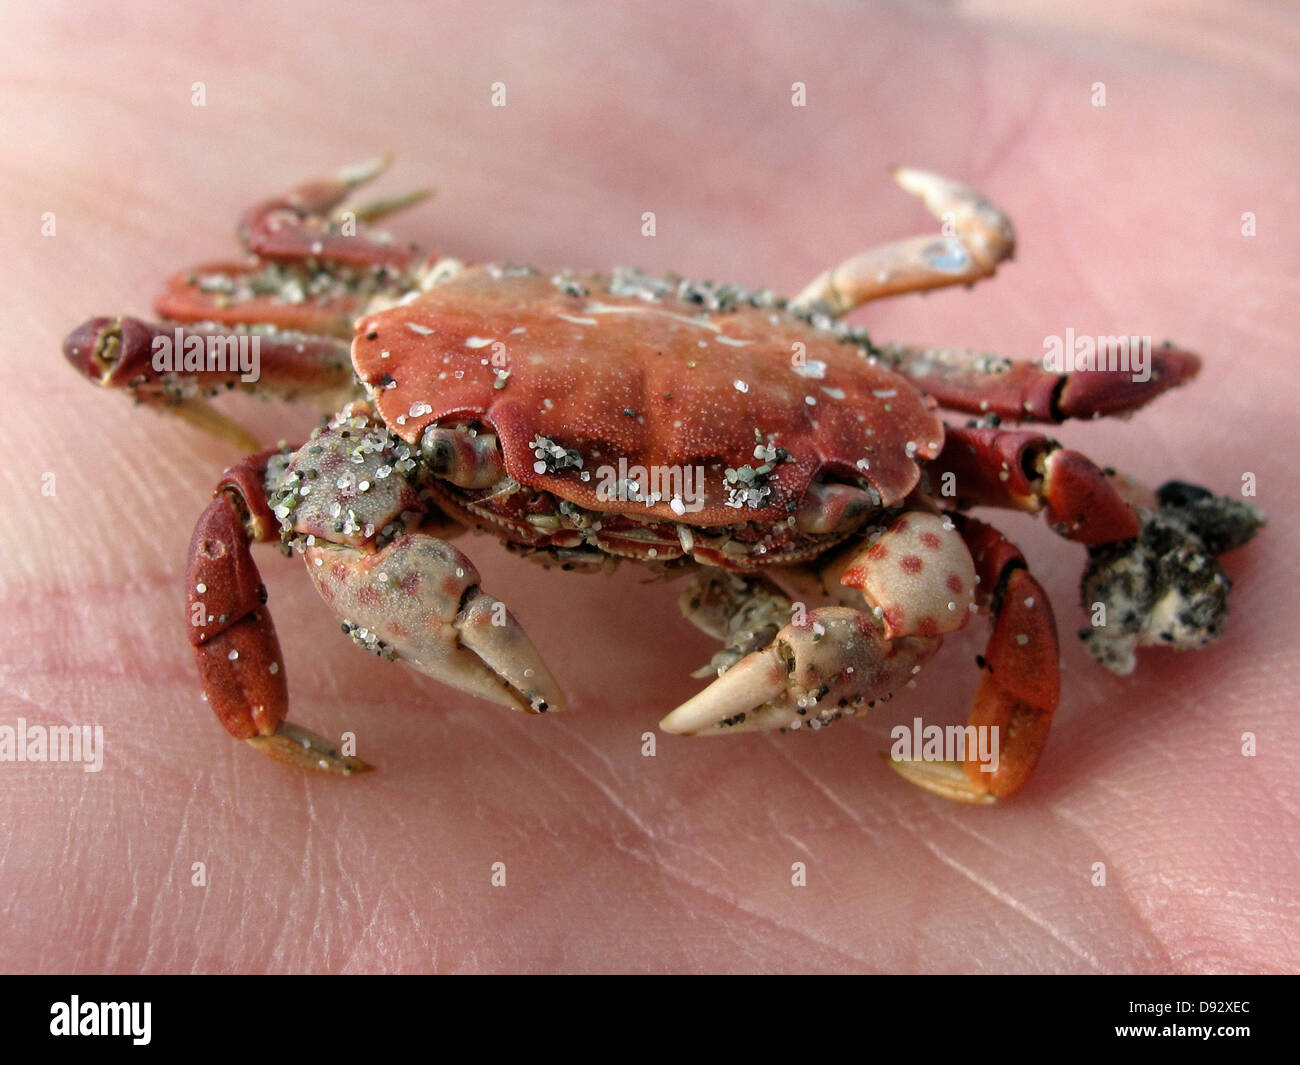 Eine sandige Krabbe auf eine menschliche Palme, close-up Fokus auf Krabbe Stockfoto